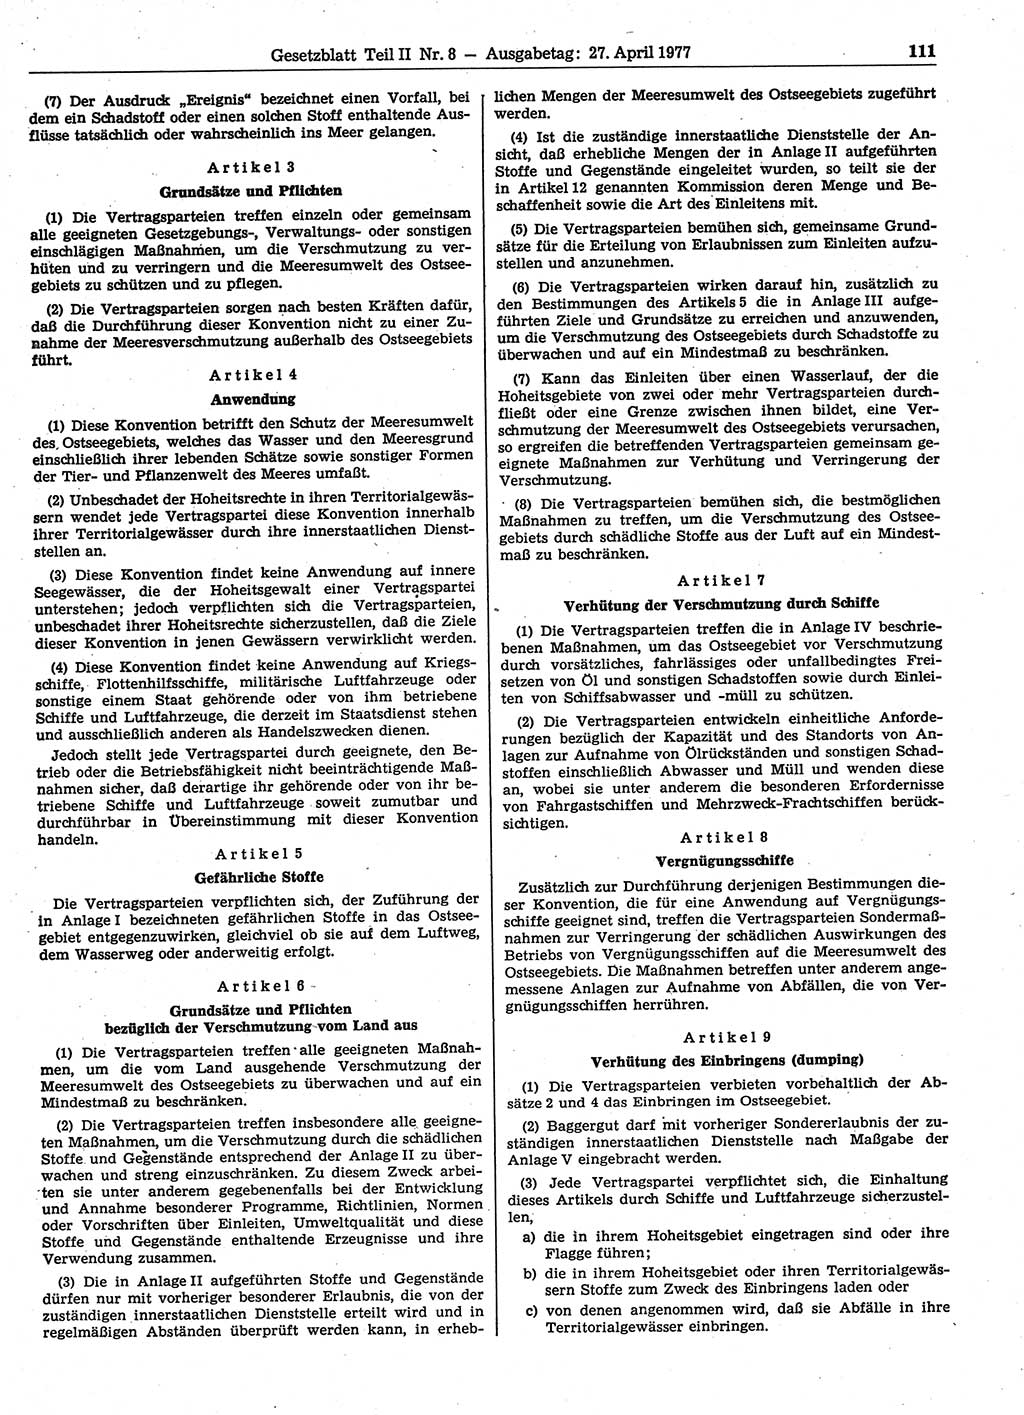 Gesetzblatt (GBl.) der Deutschen Demokratischen Republik (DDR) Teil ⅠⅠ 1977, Seite 111 (GBl. DDR ⅠⅠ 1977, S. 111)